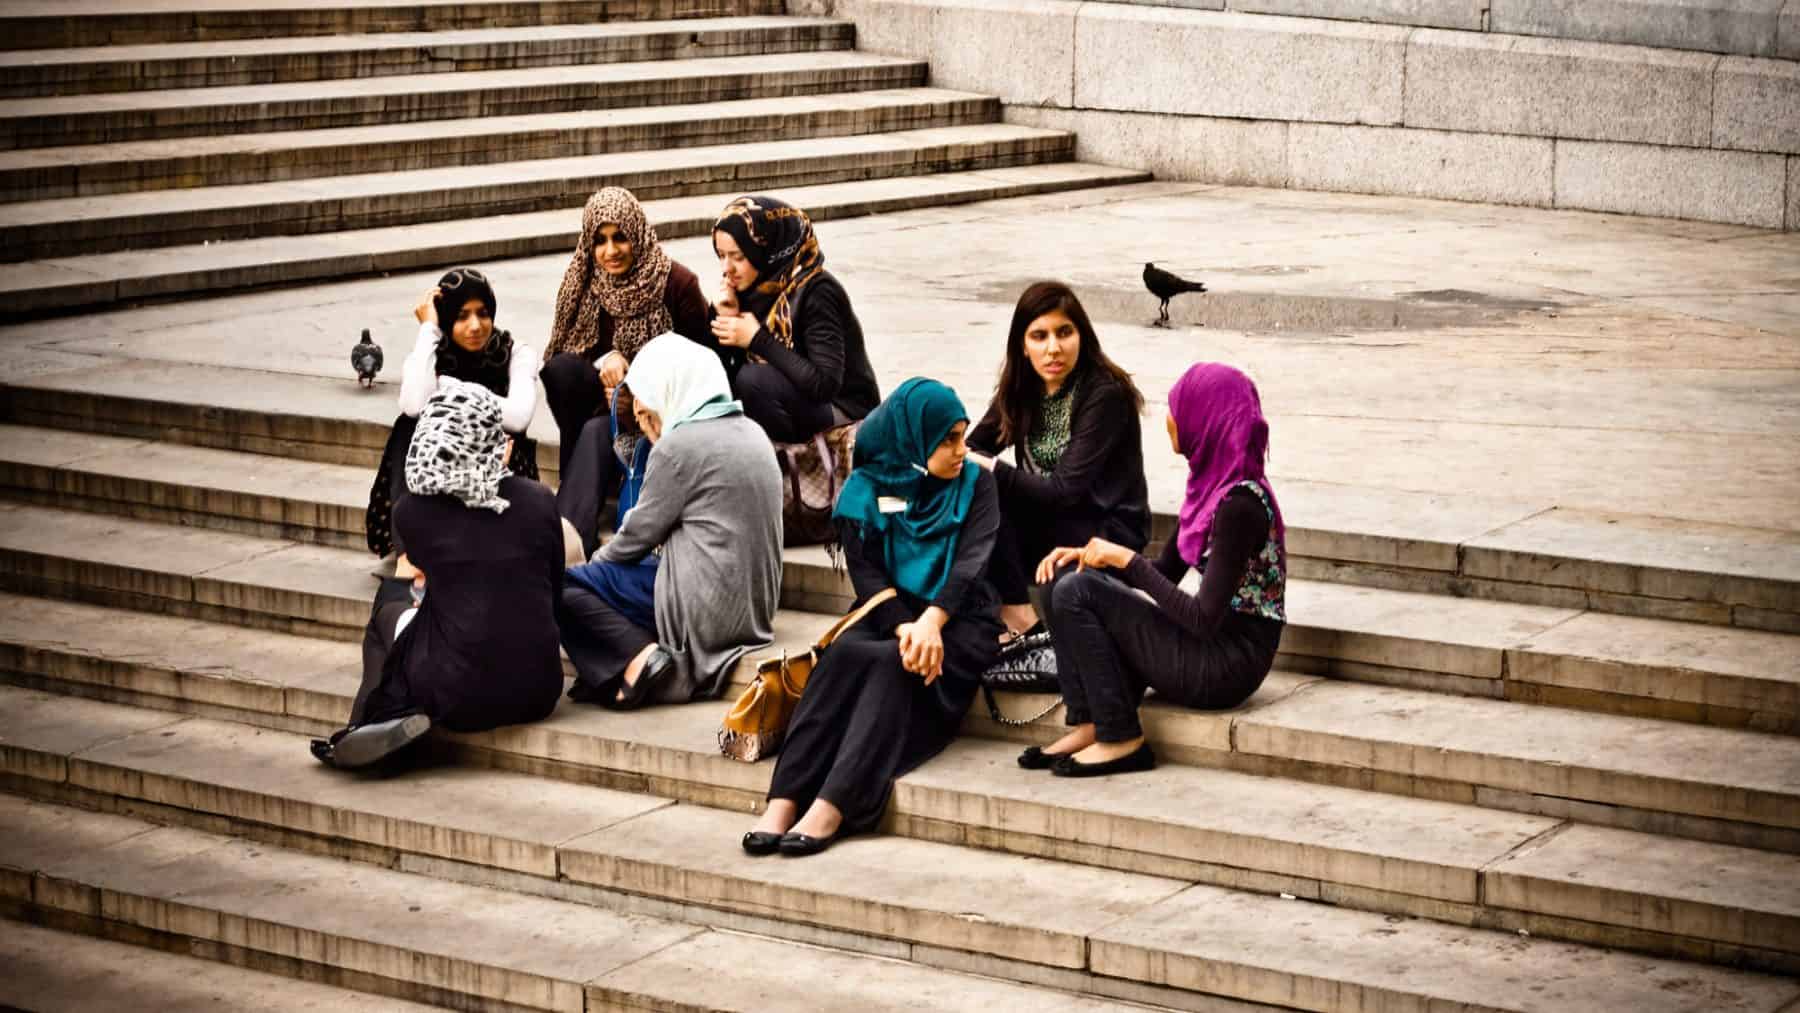 Day 28 Alt Muslim Ladies In Trafalgar Square London England By Garry Knights Via Flickr Cc